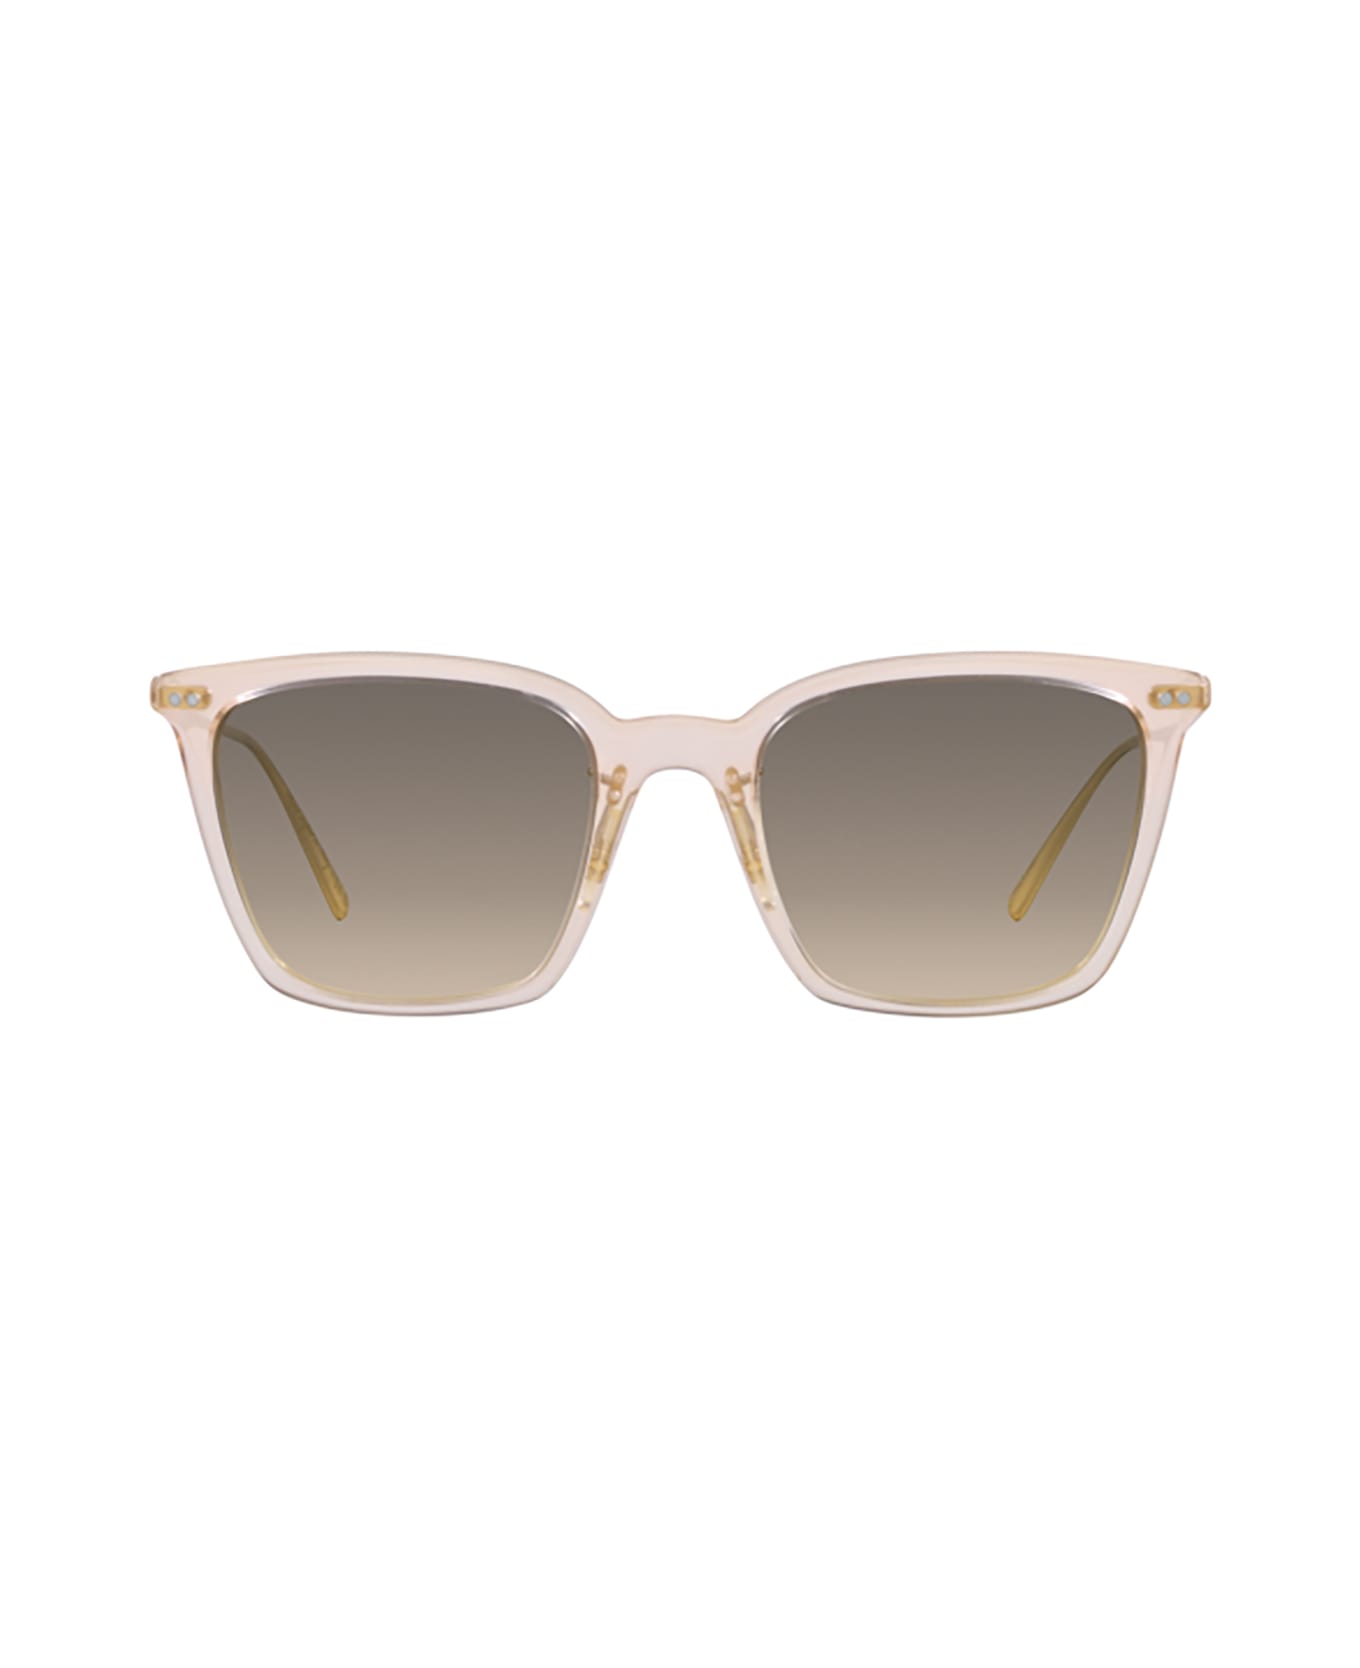 Oliver Peoples Ov5516s Cipria / Brushed Gold Sunglasses - Cipria / Brushed Gold